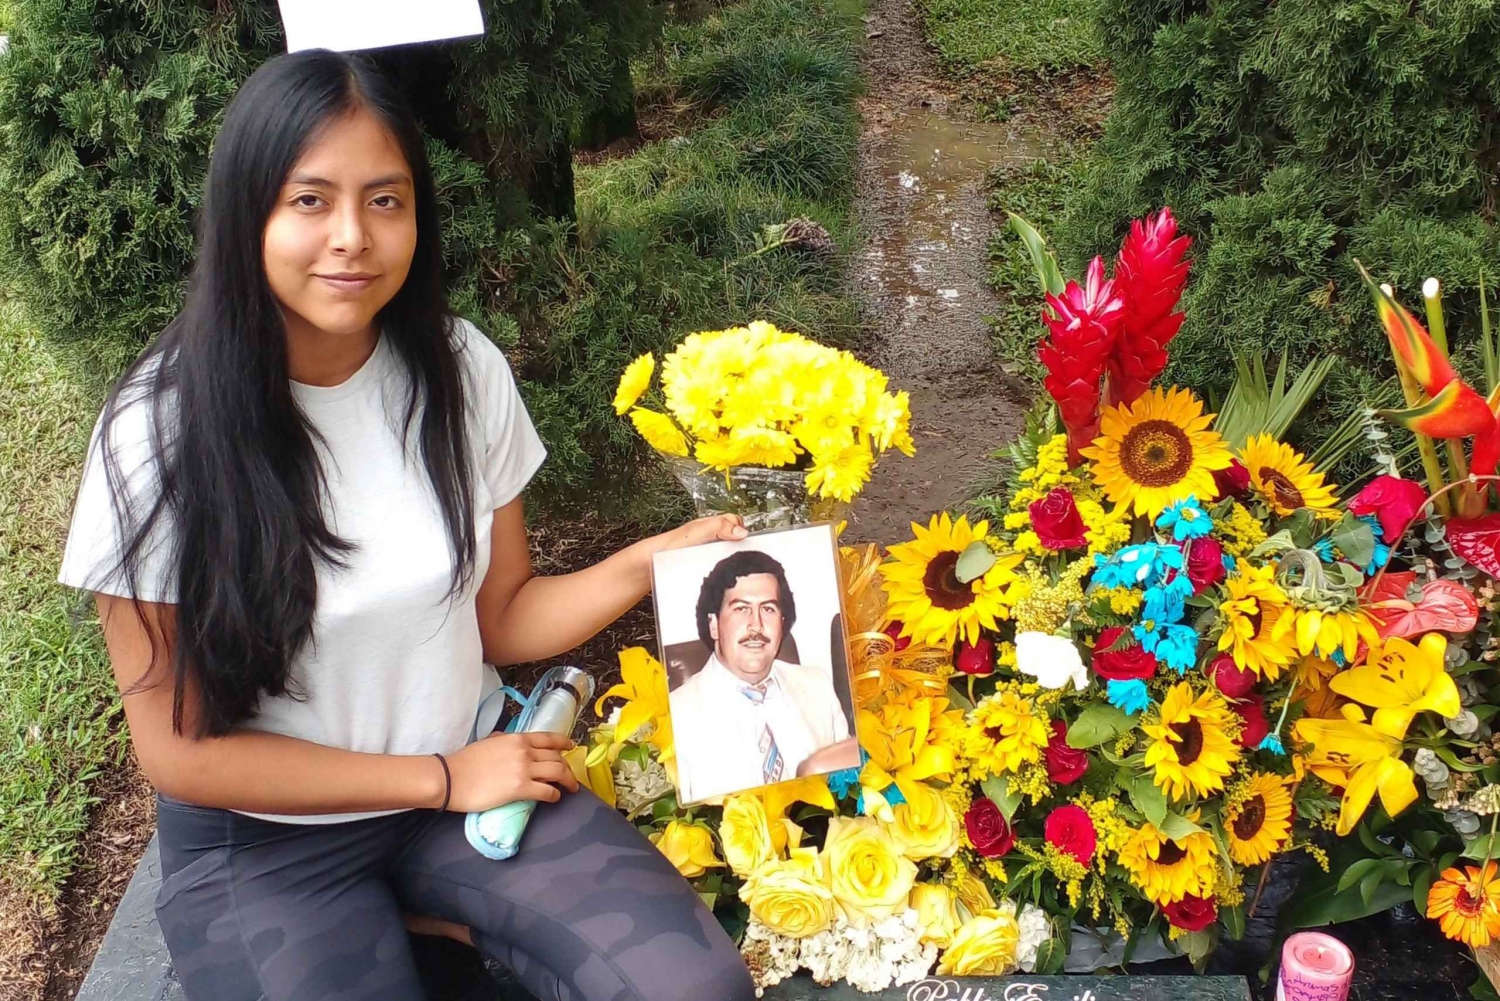 Medellín: Pablo Escobar y Tour de la ciudad privado. 2 visitas en 1